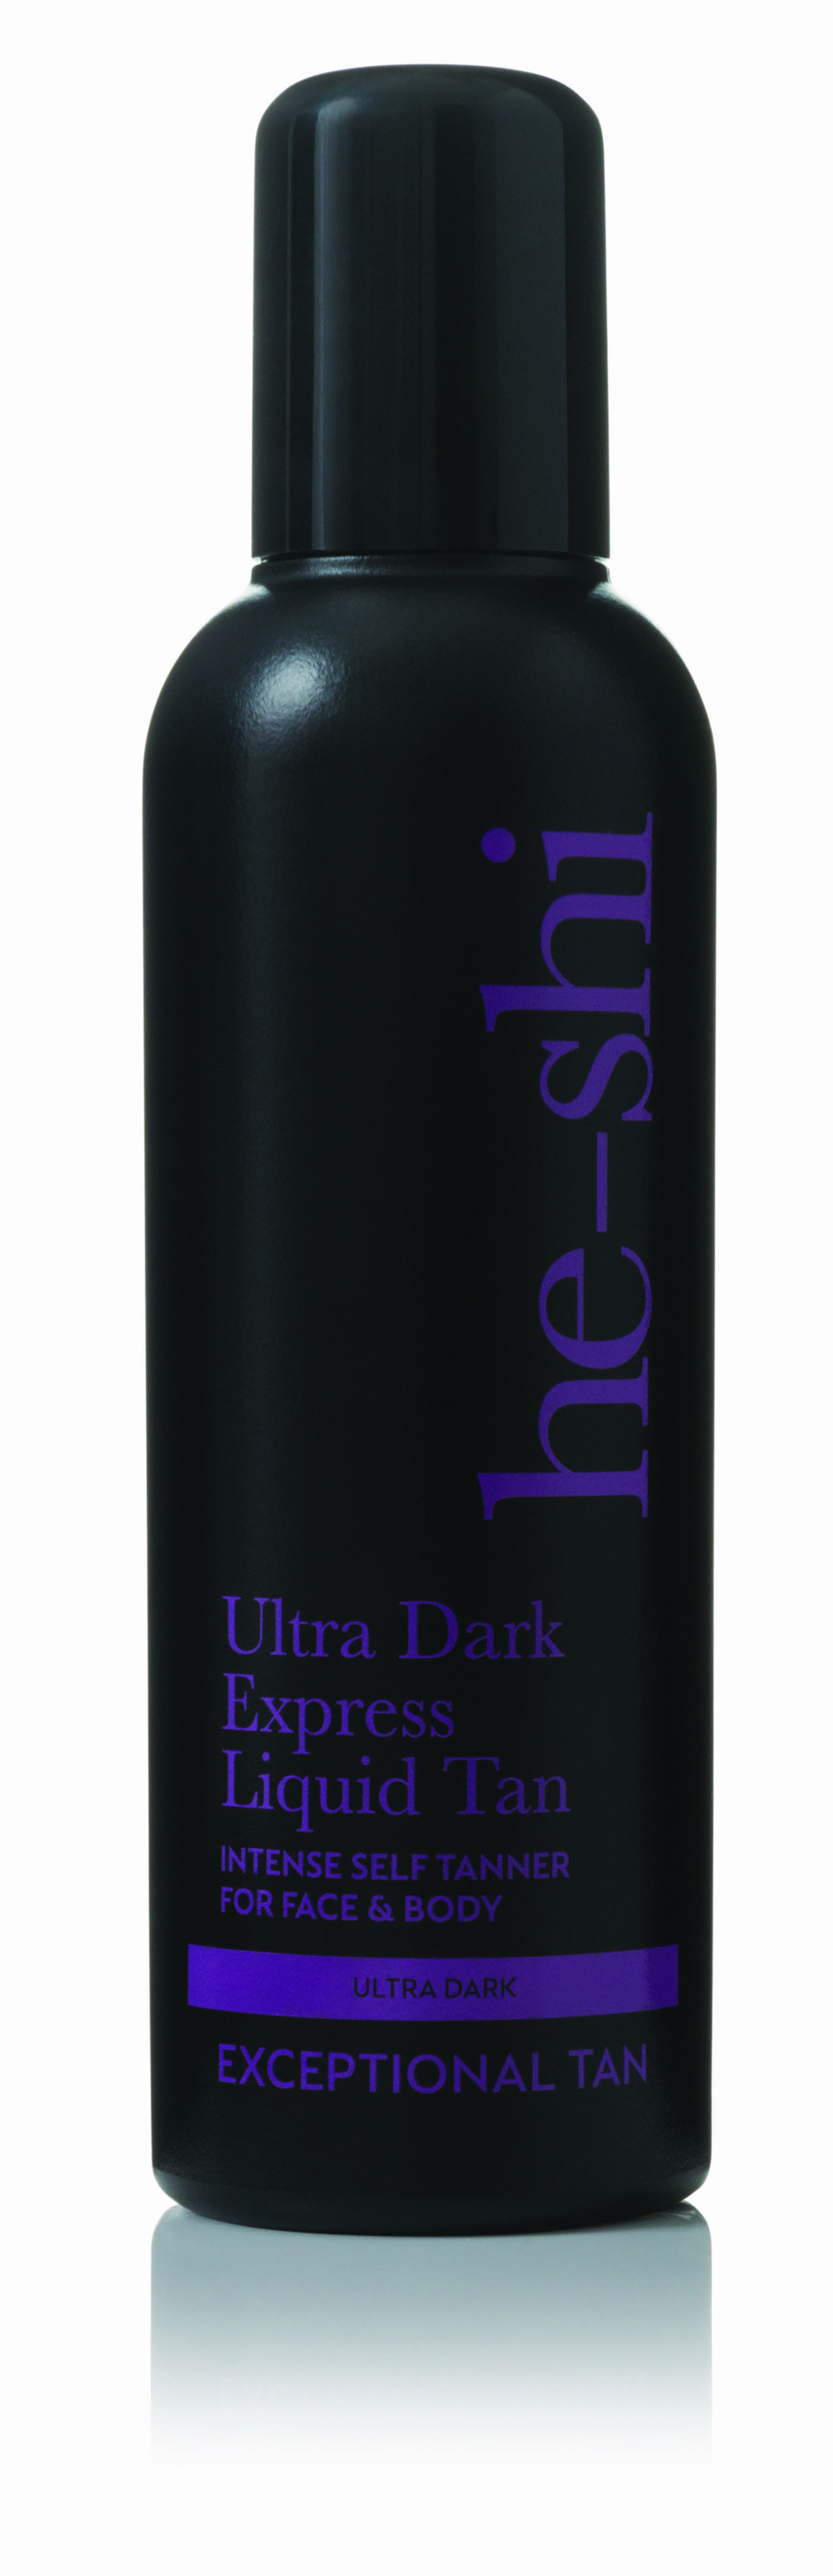 He-Shi Ultra Dark Express Liquid Tan 